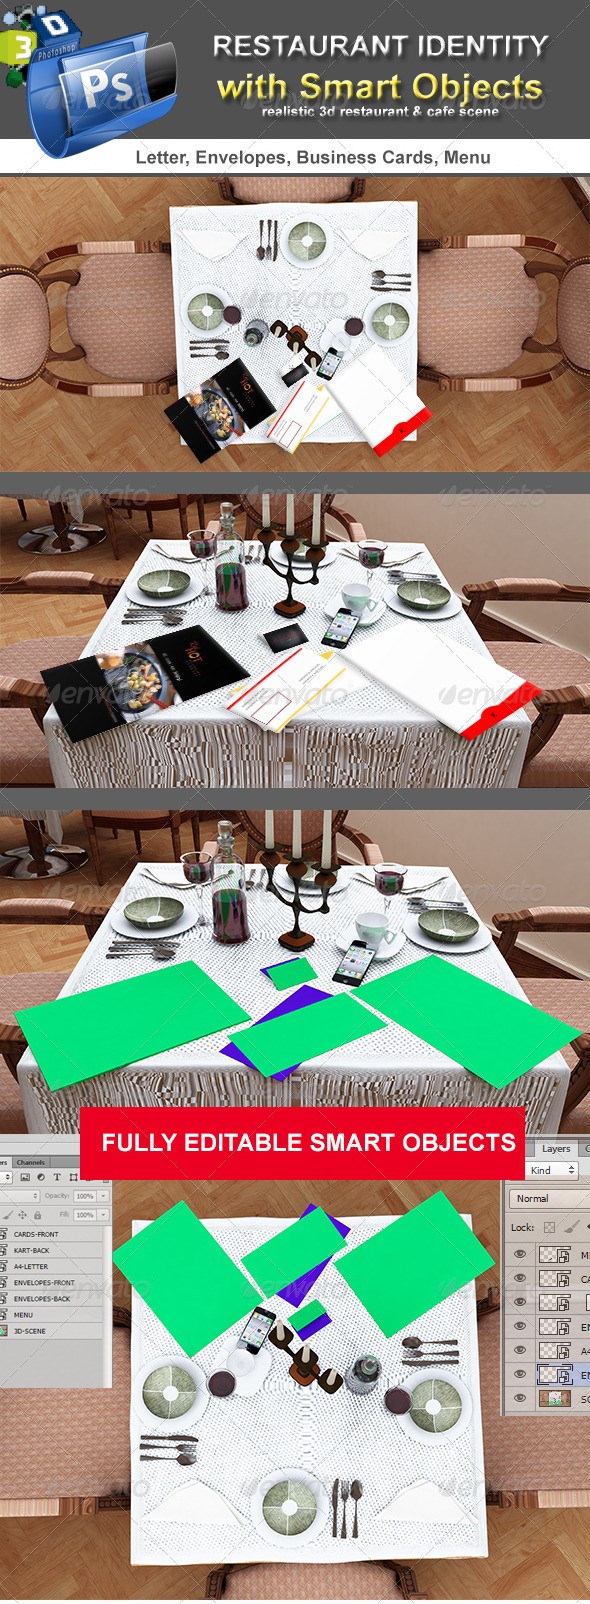 هویت رستوران - صحنه میز